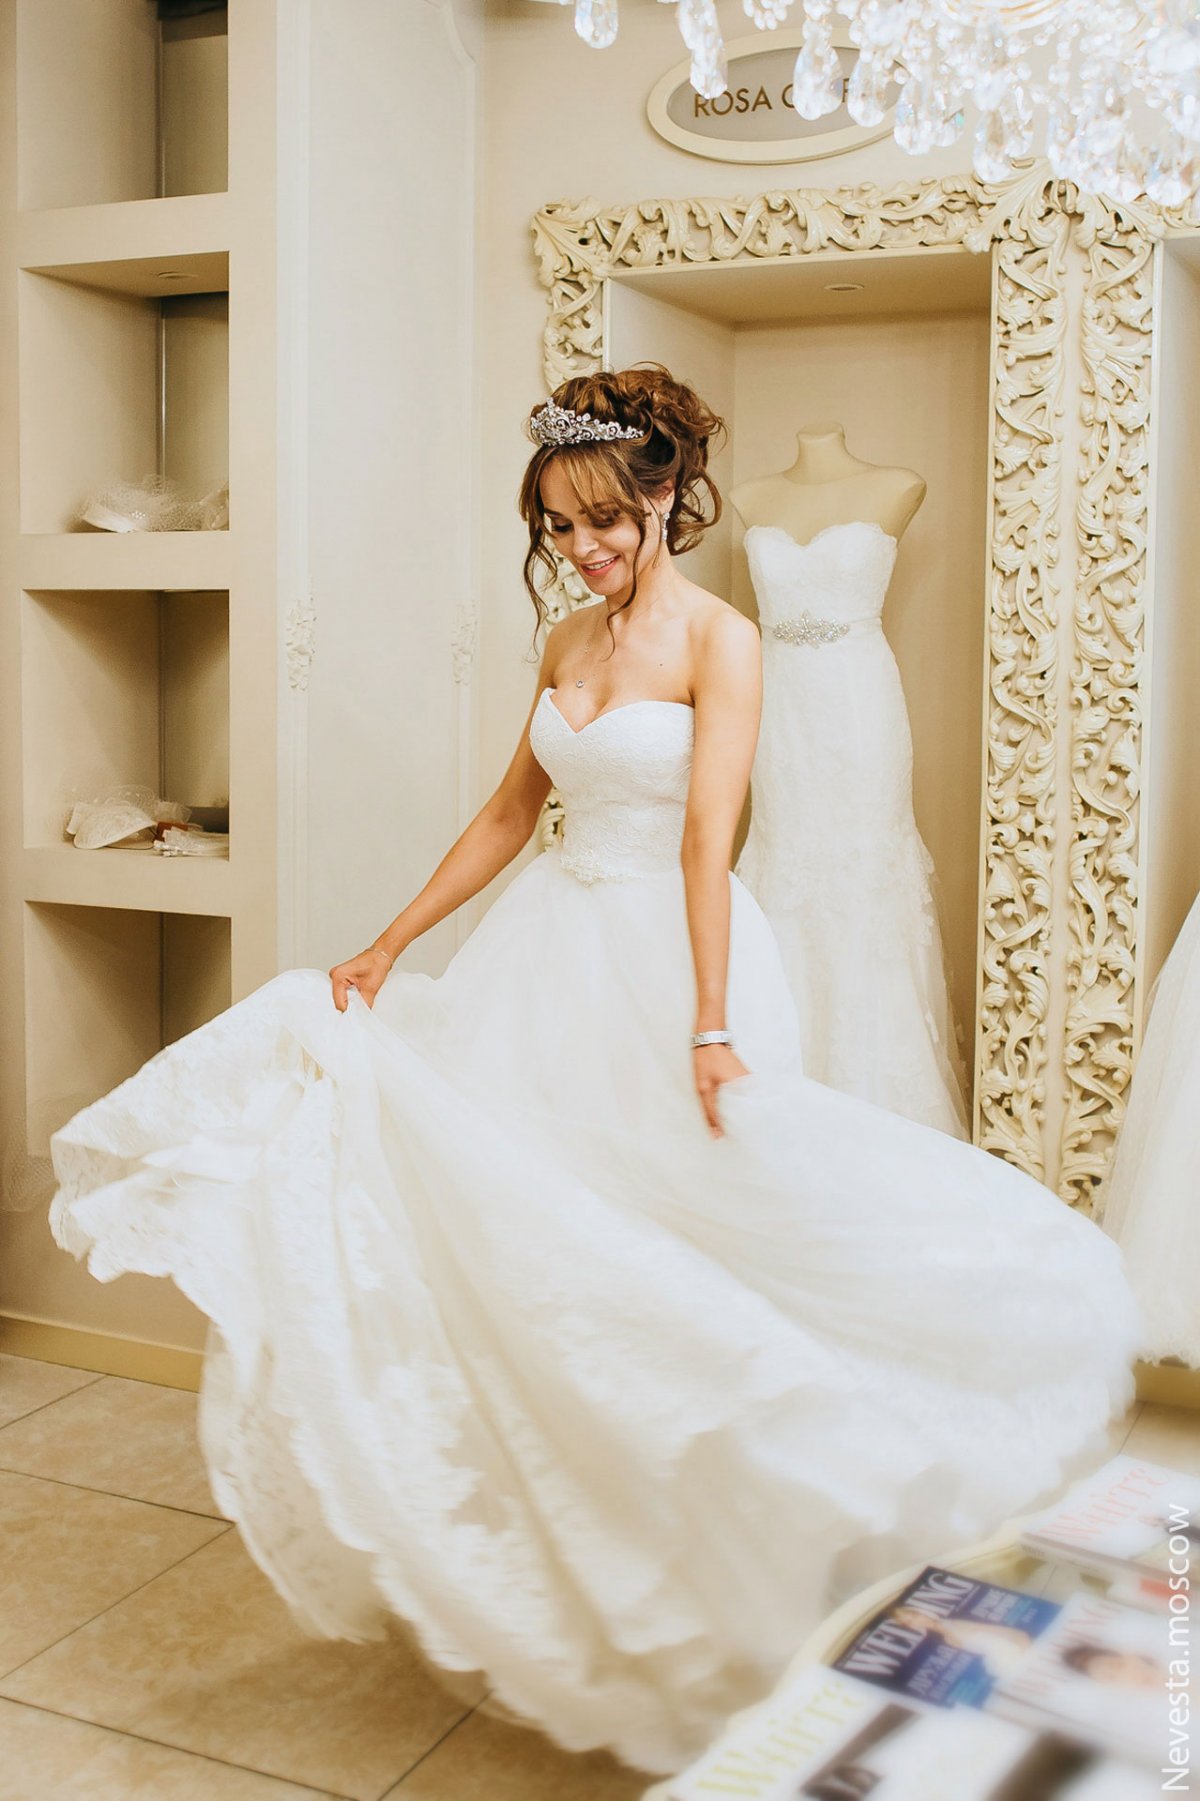 Анна Калашникова выбирает образ для своей свадьбы фото 29